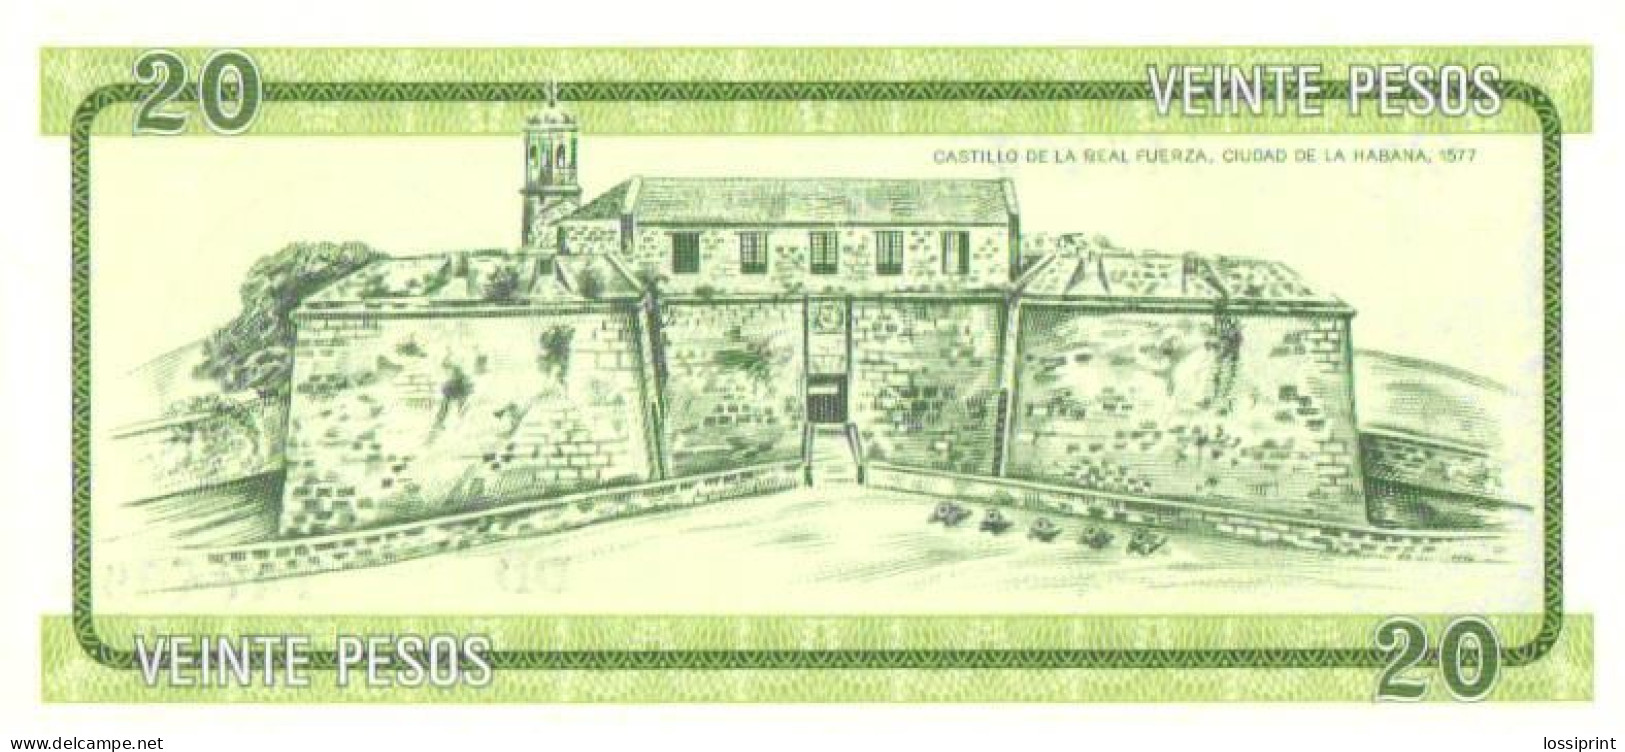 20 Pesos, Letter B, Seria DD, UNC - Cuba